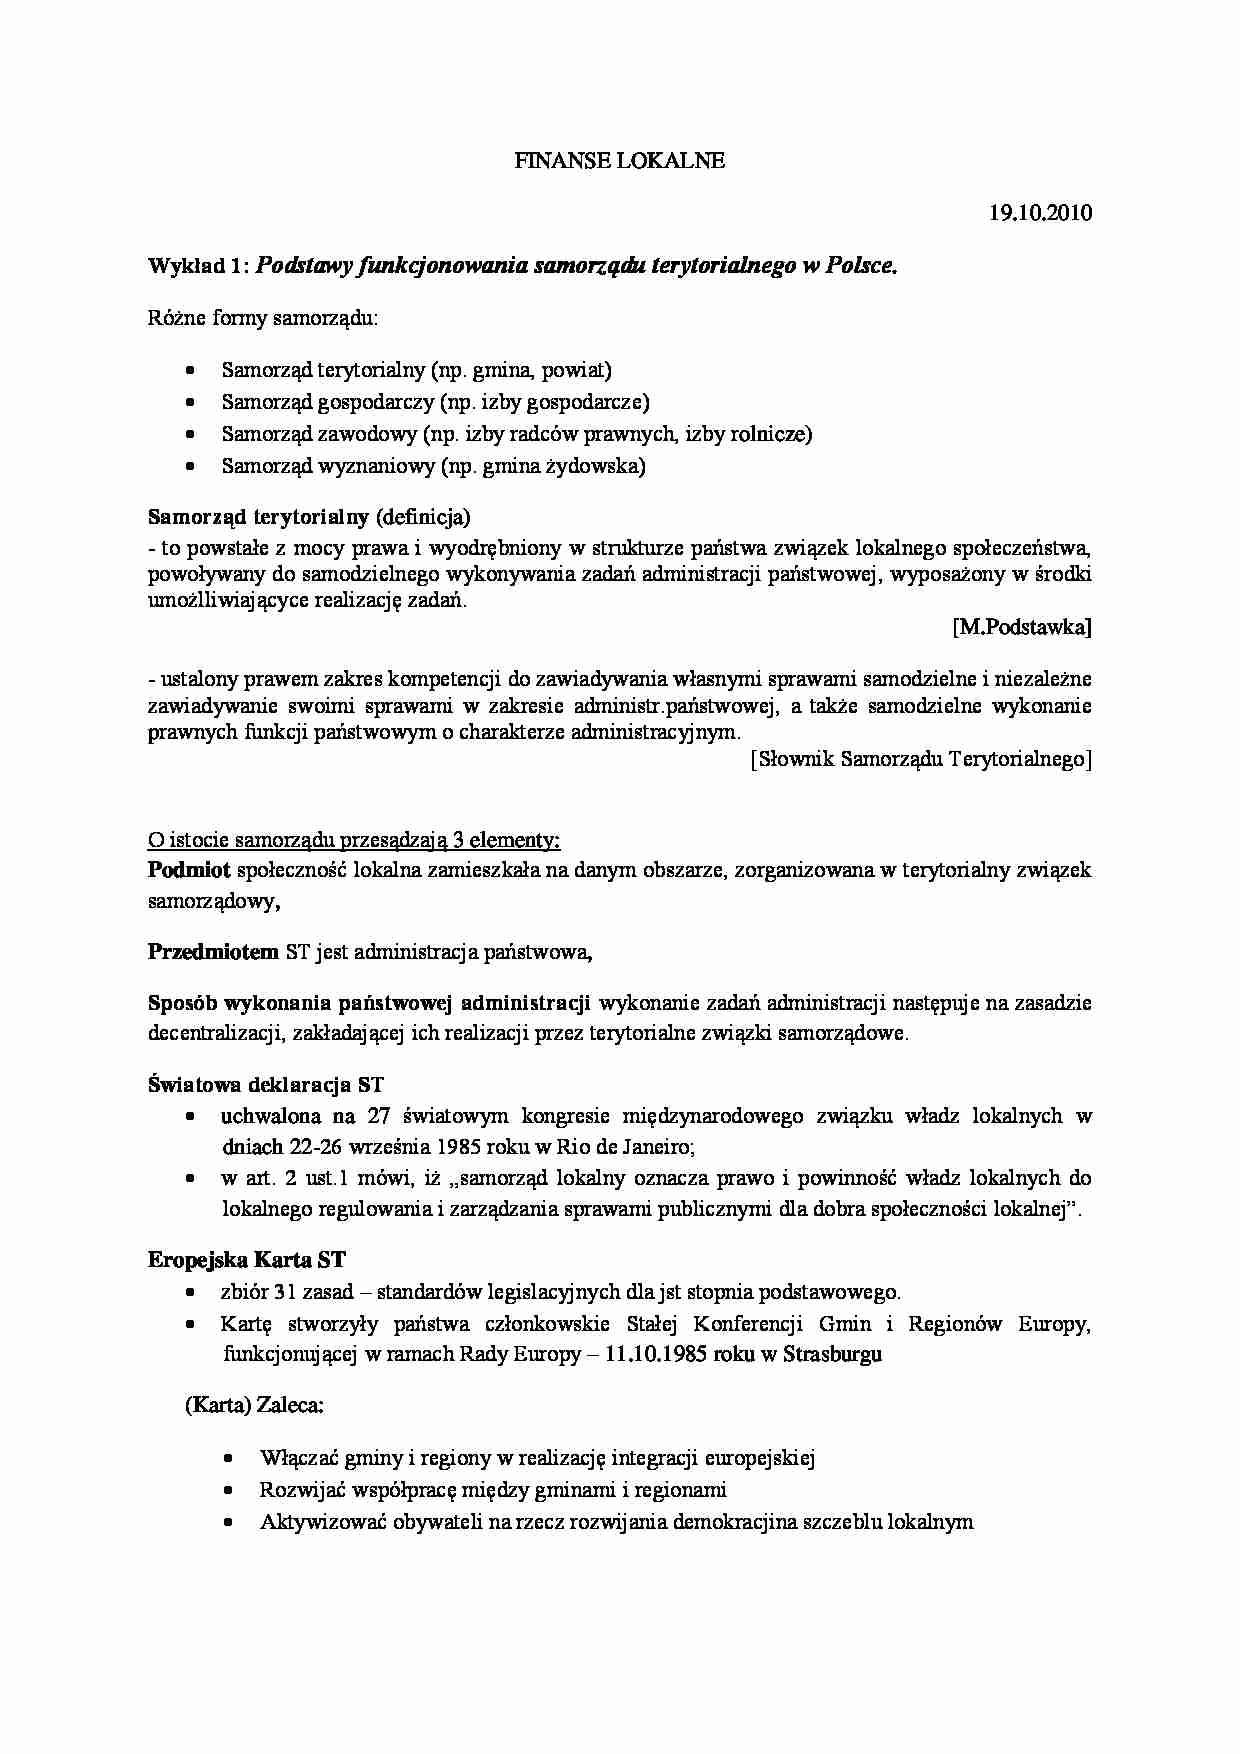 Podstawy funkcjonowania samorządu terytorialnego w Polsce - wykład - strona 1